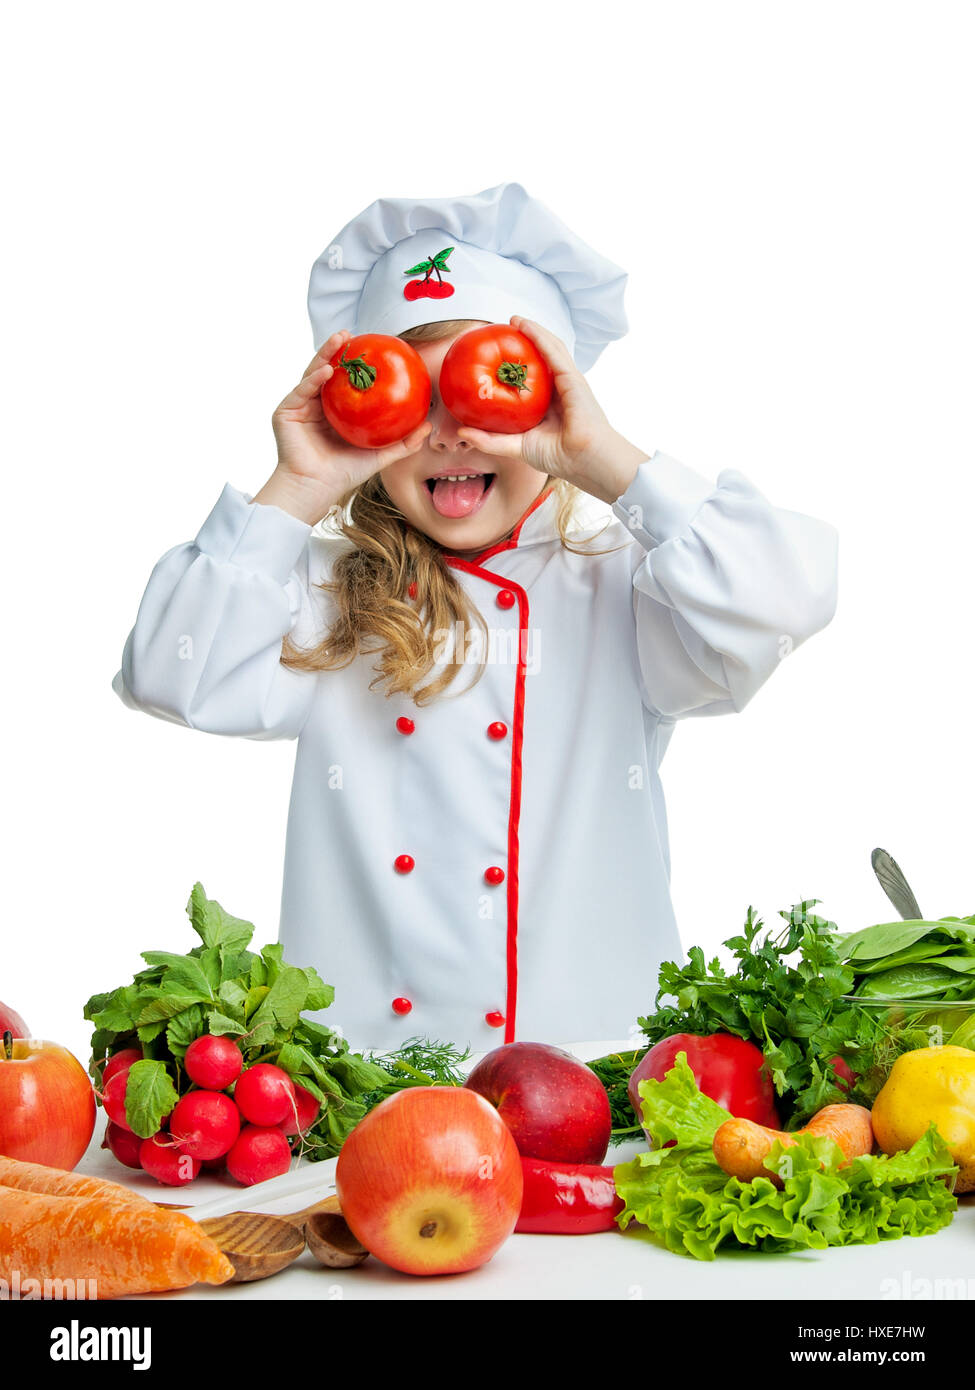 Child 5-6 years preparing food. Stock Photo